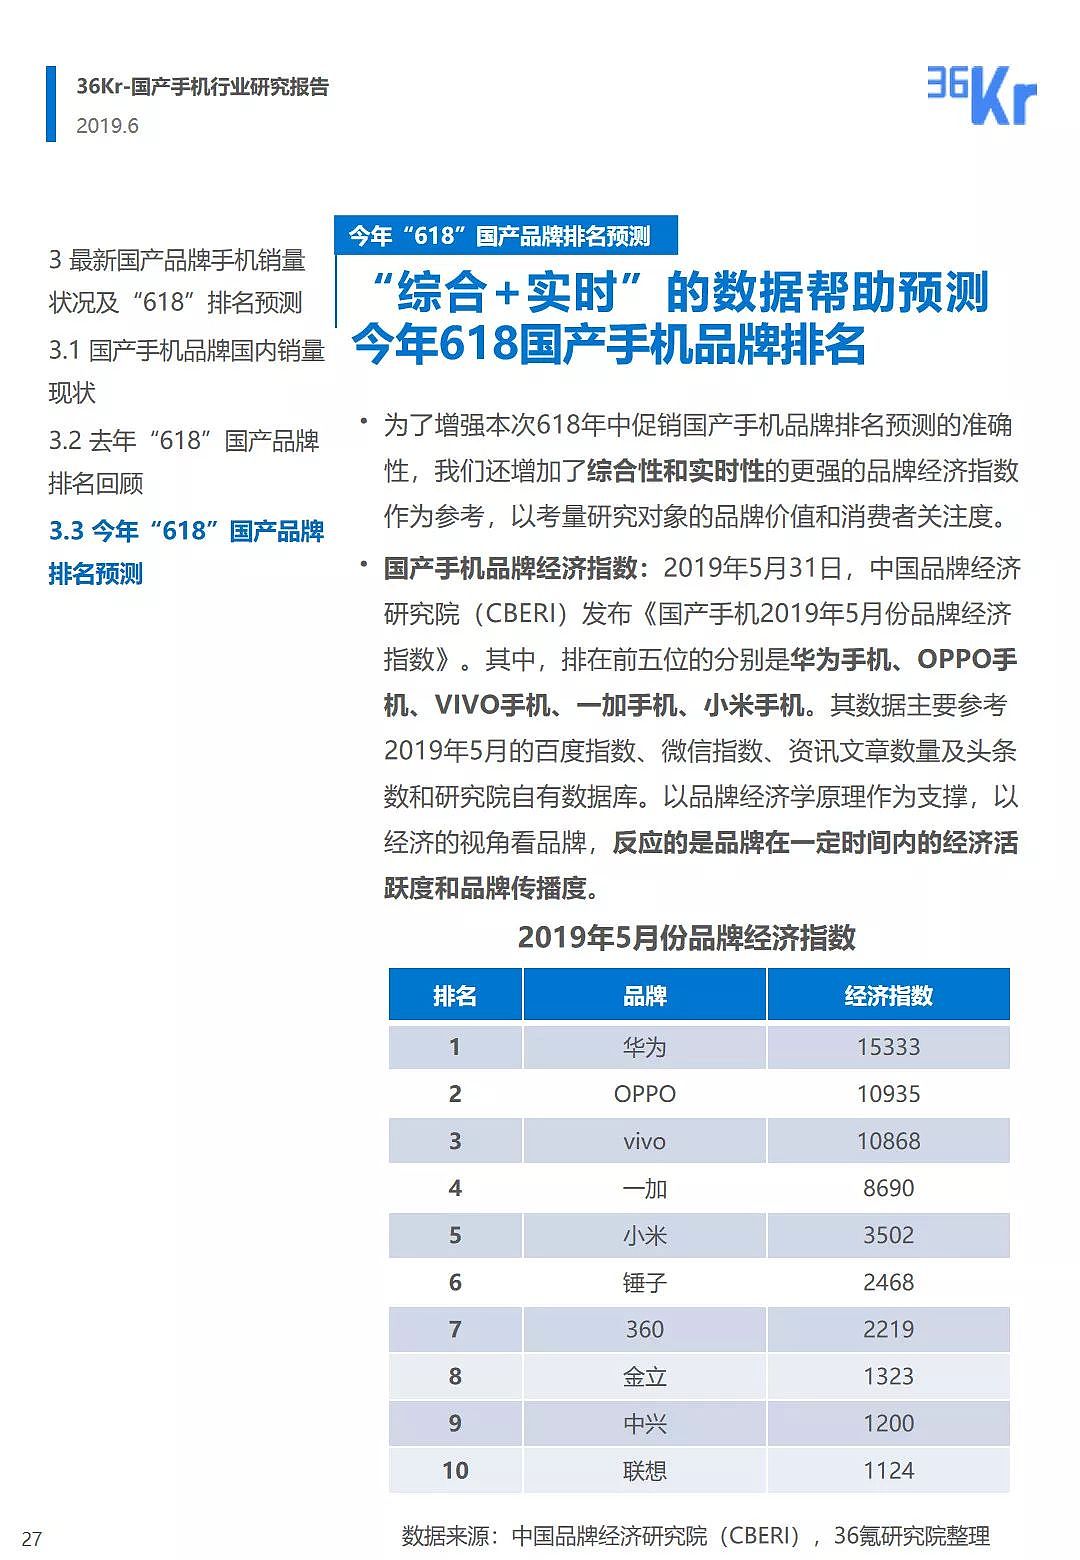 中国手机品牌市场营销研究报告 | 36氪研究 - 28